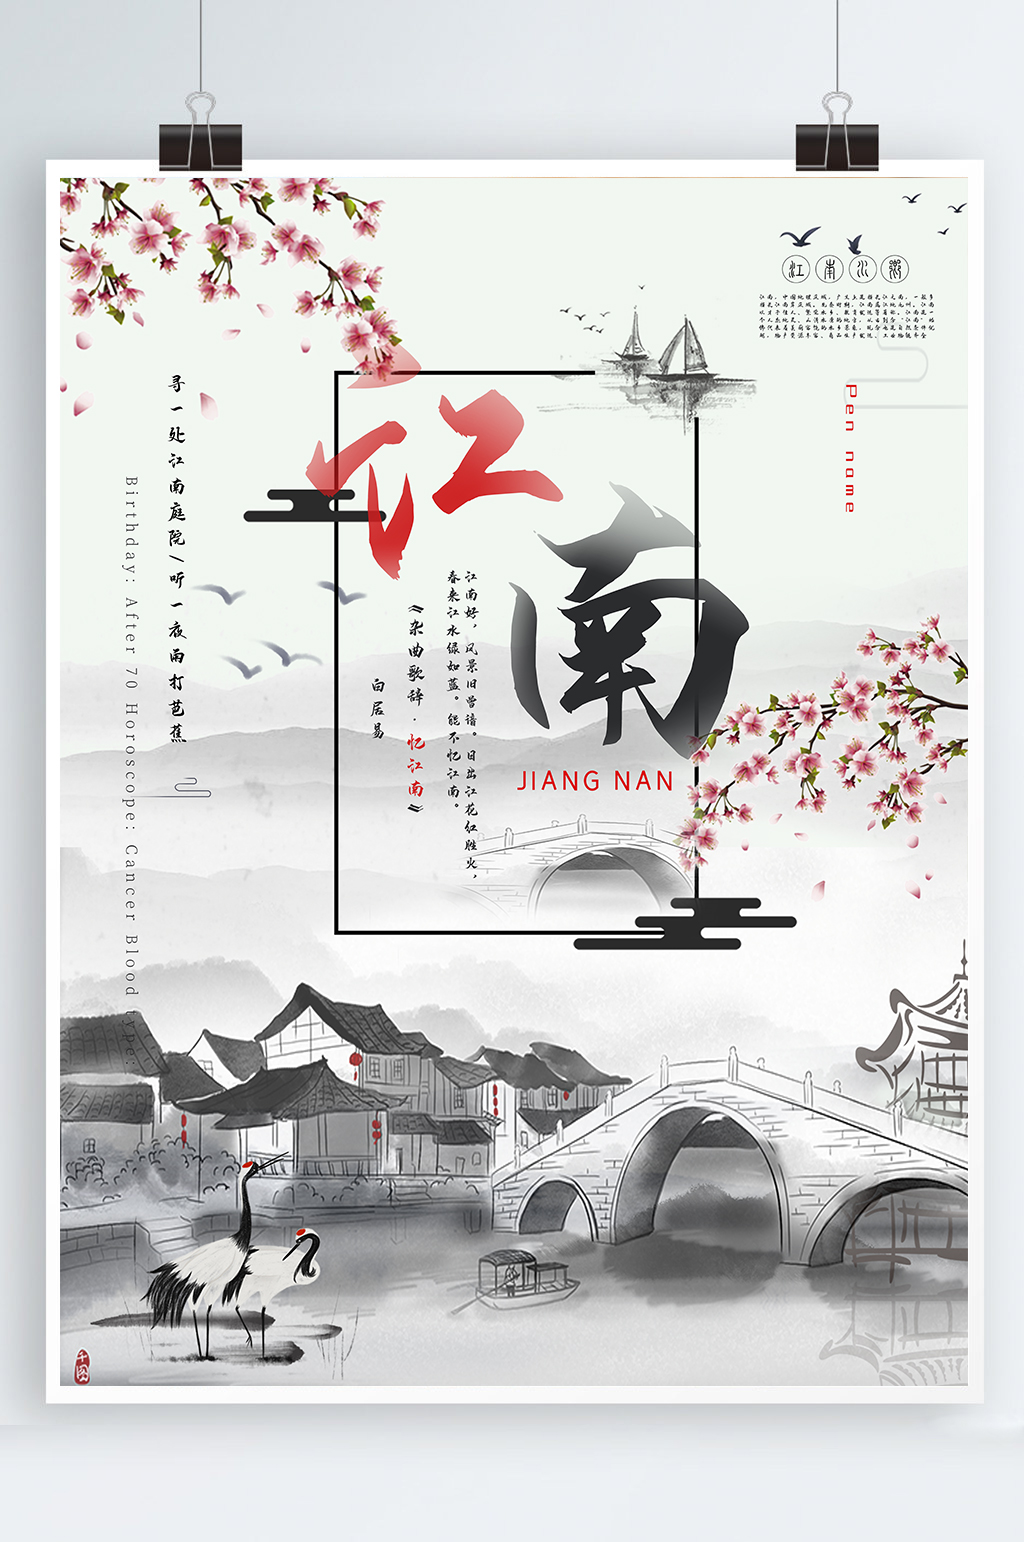 众图网独家提供水墨江南古风海报素材免费下载,本作品是由昕月上传的